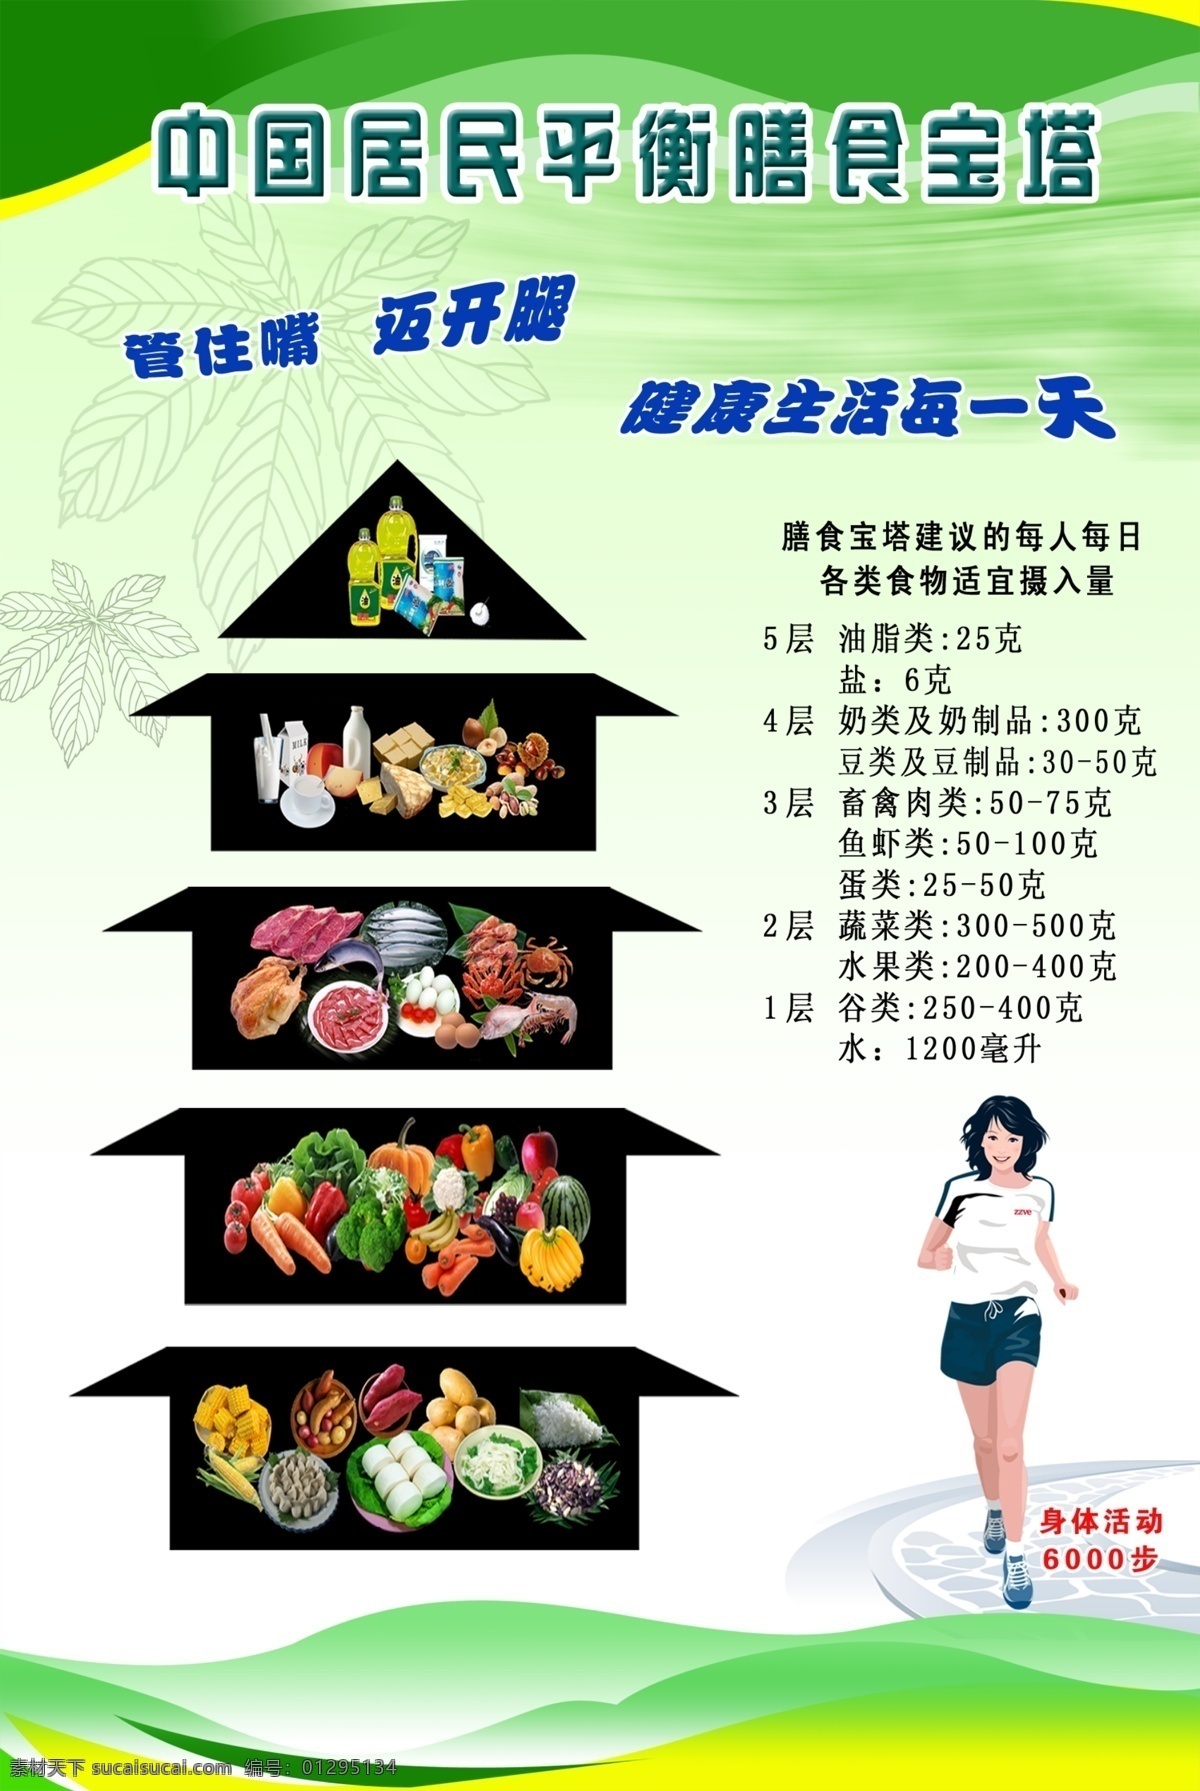 中国 居民 平衡 膳食 宝塔 健康 学校橱窗海报 展板模板 膳食宝塔 健康专栏 展板背景 制度背景 展板 广告设计模板 源文件